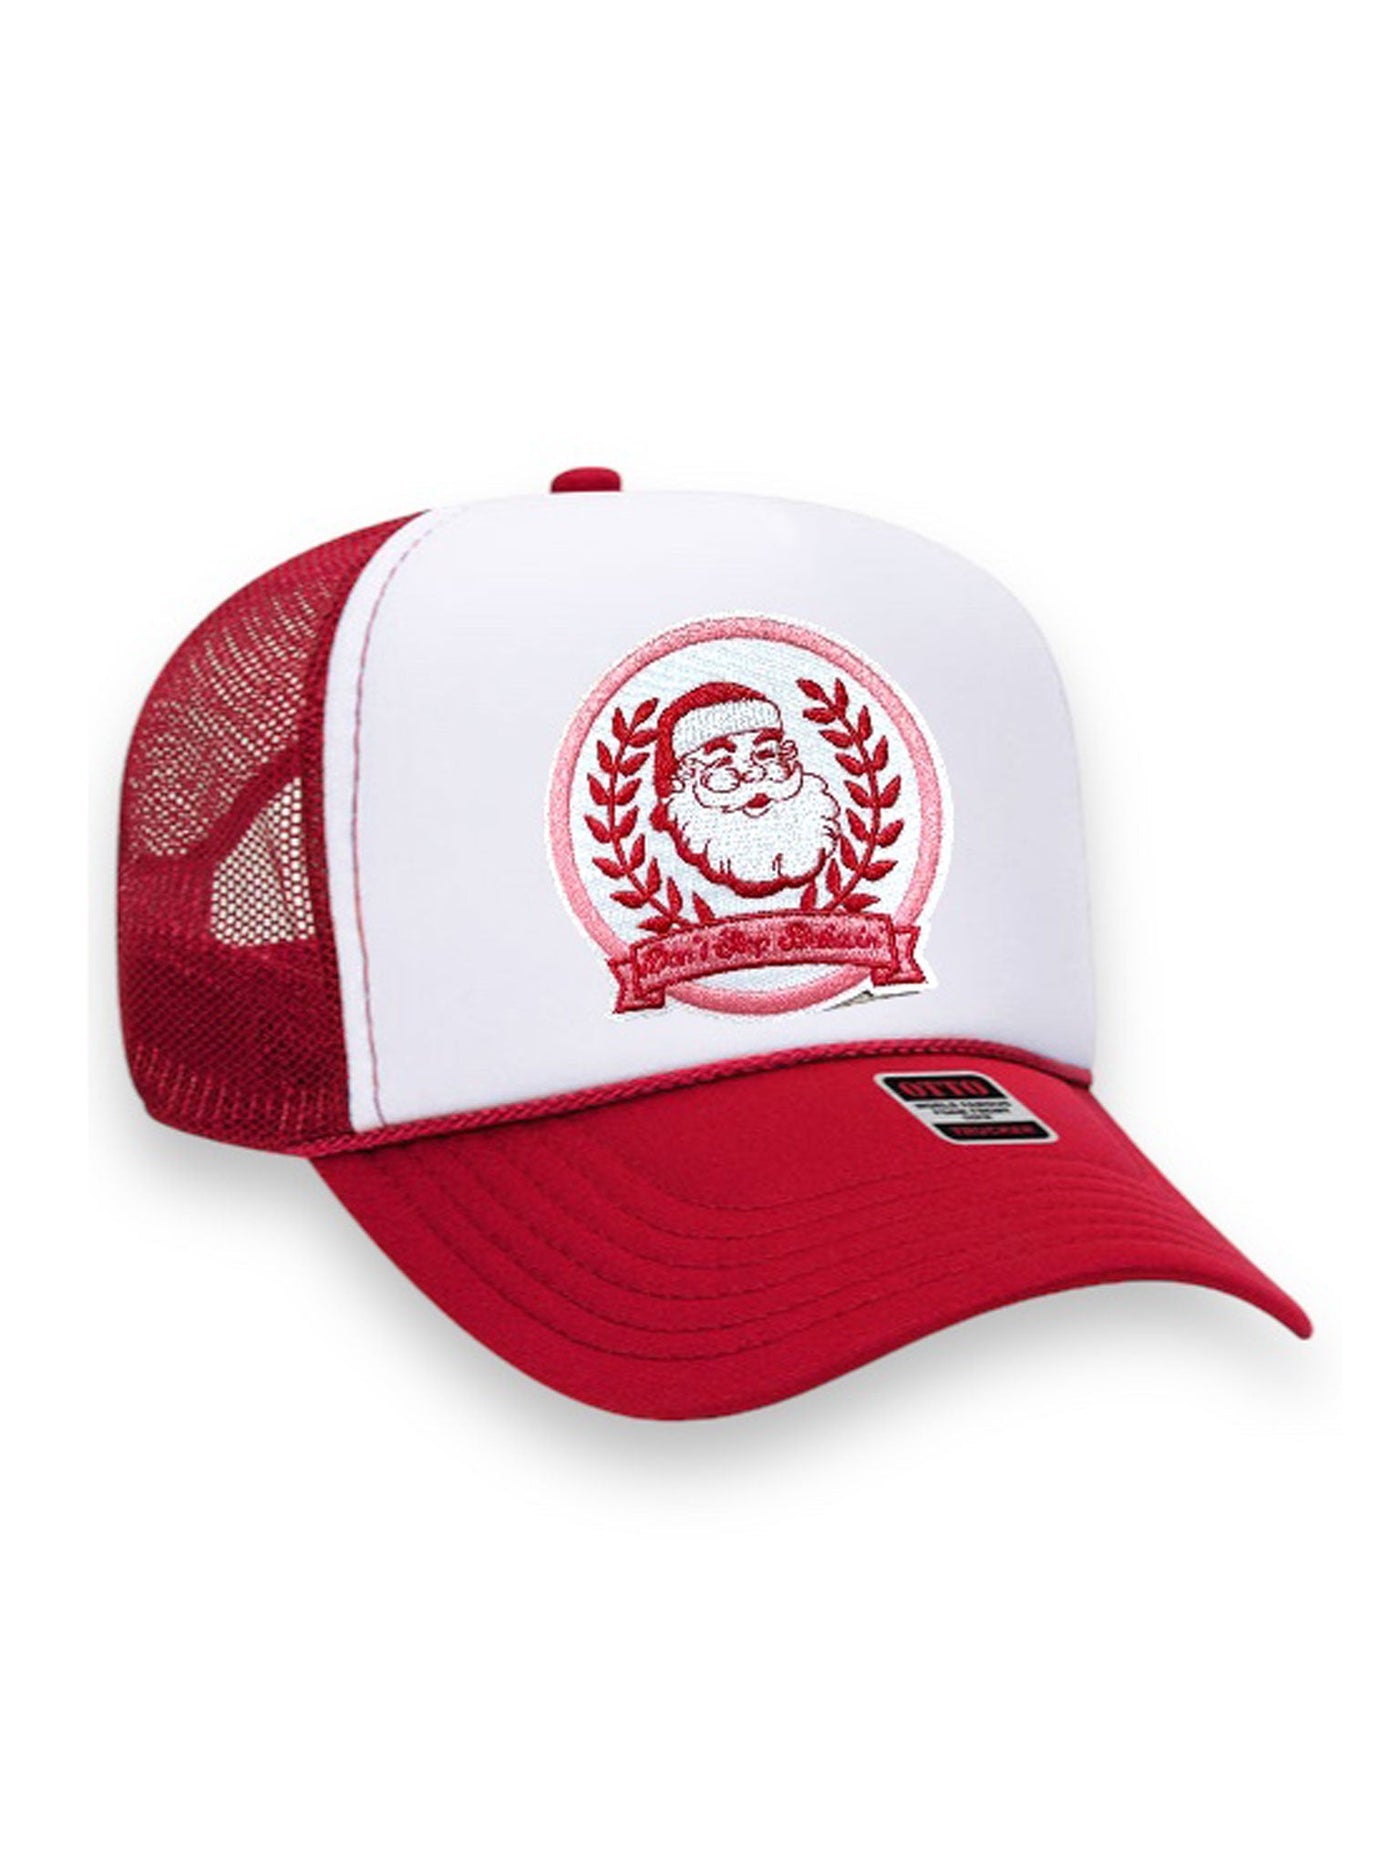 Santa Fan Club Trucker Hat